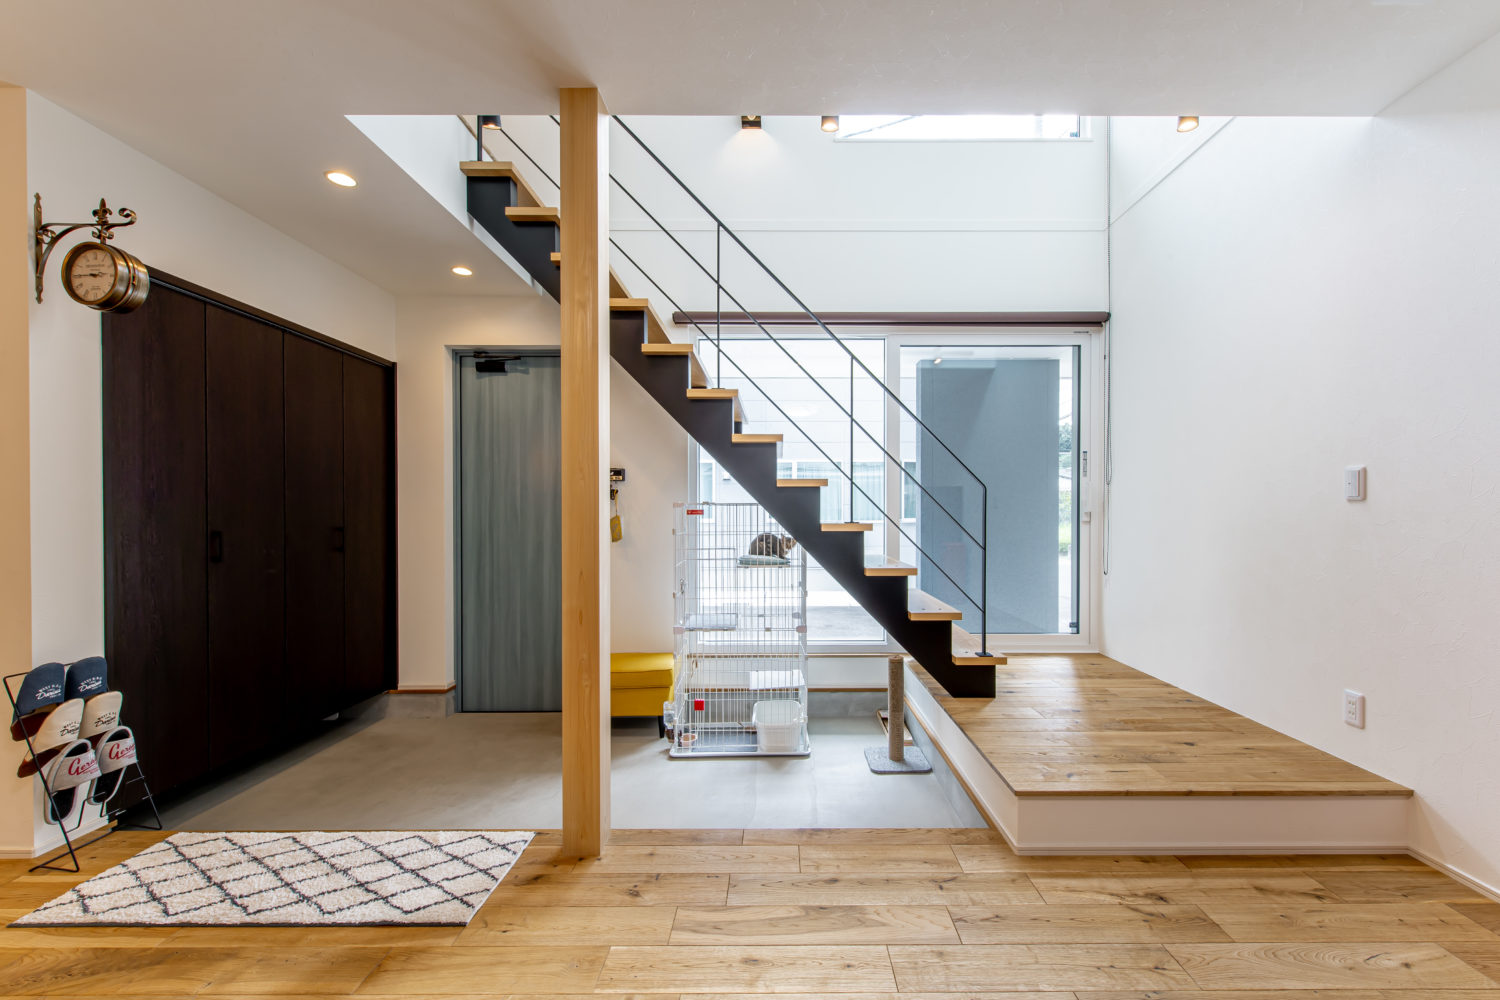 アイデザインホーム
注文住宅
広島　トリプルガラスサッシの採用で吹抜や大開口サッシを配置しても快適な空間を実現